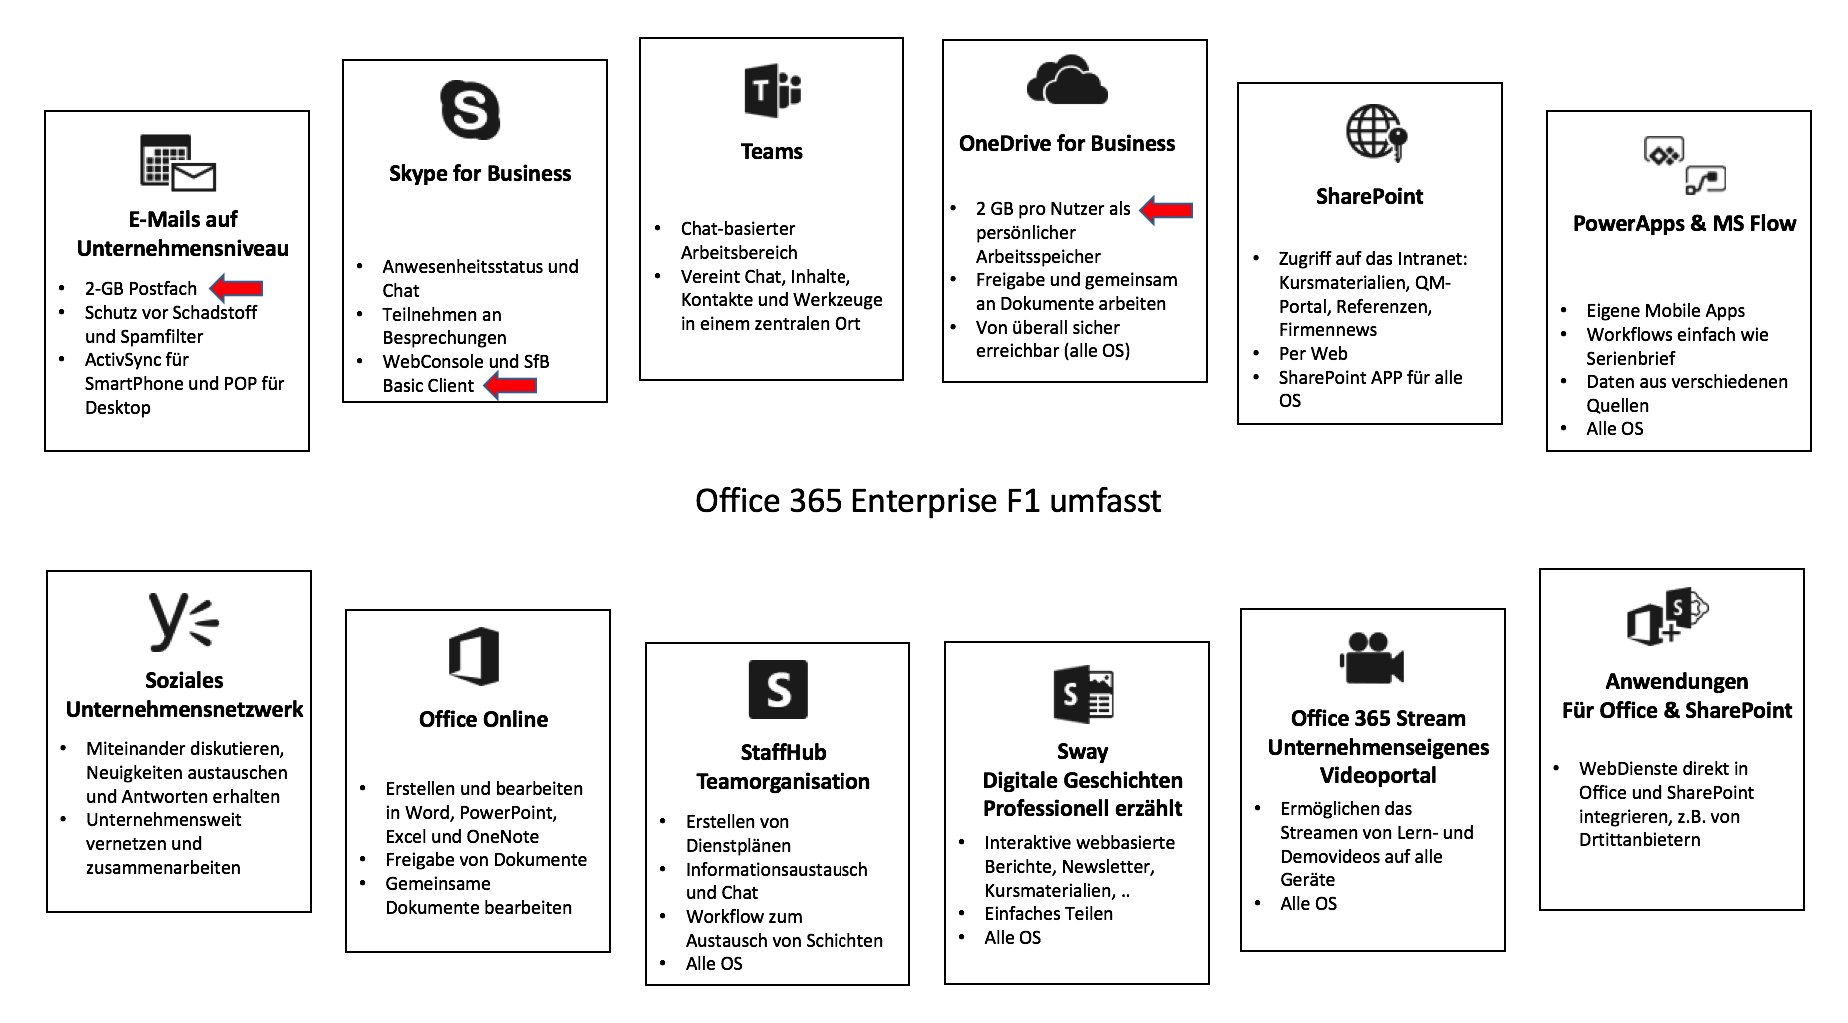 Darstellung der Funktionen und Dienste von Microsoft Office 365 F1 